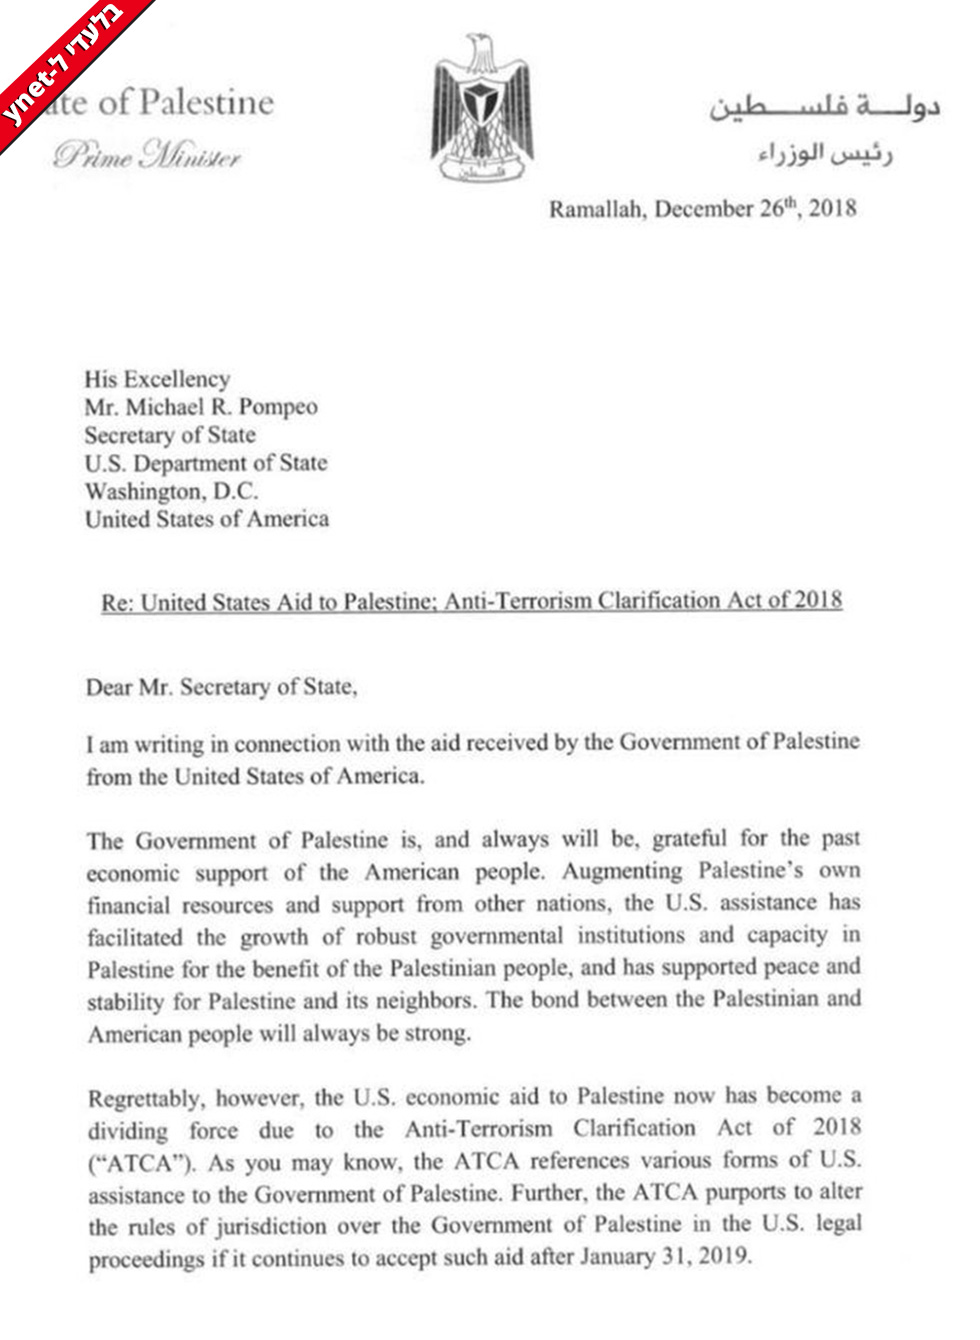 Письмо ПА в госдеп США об отказе от получения финансовой помощи